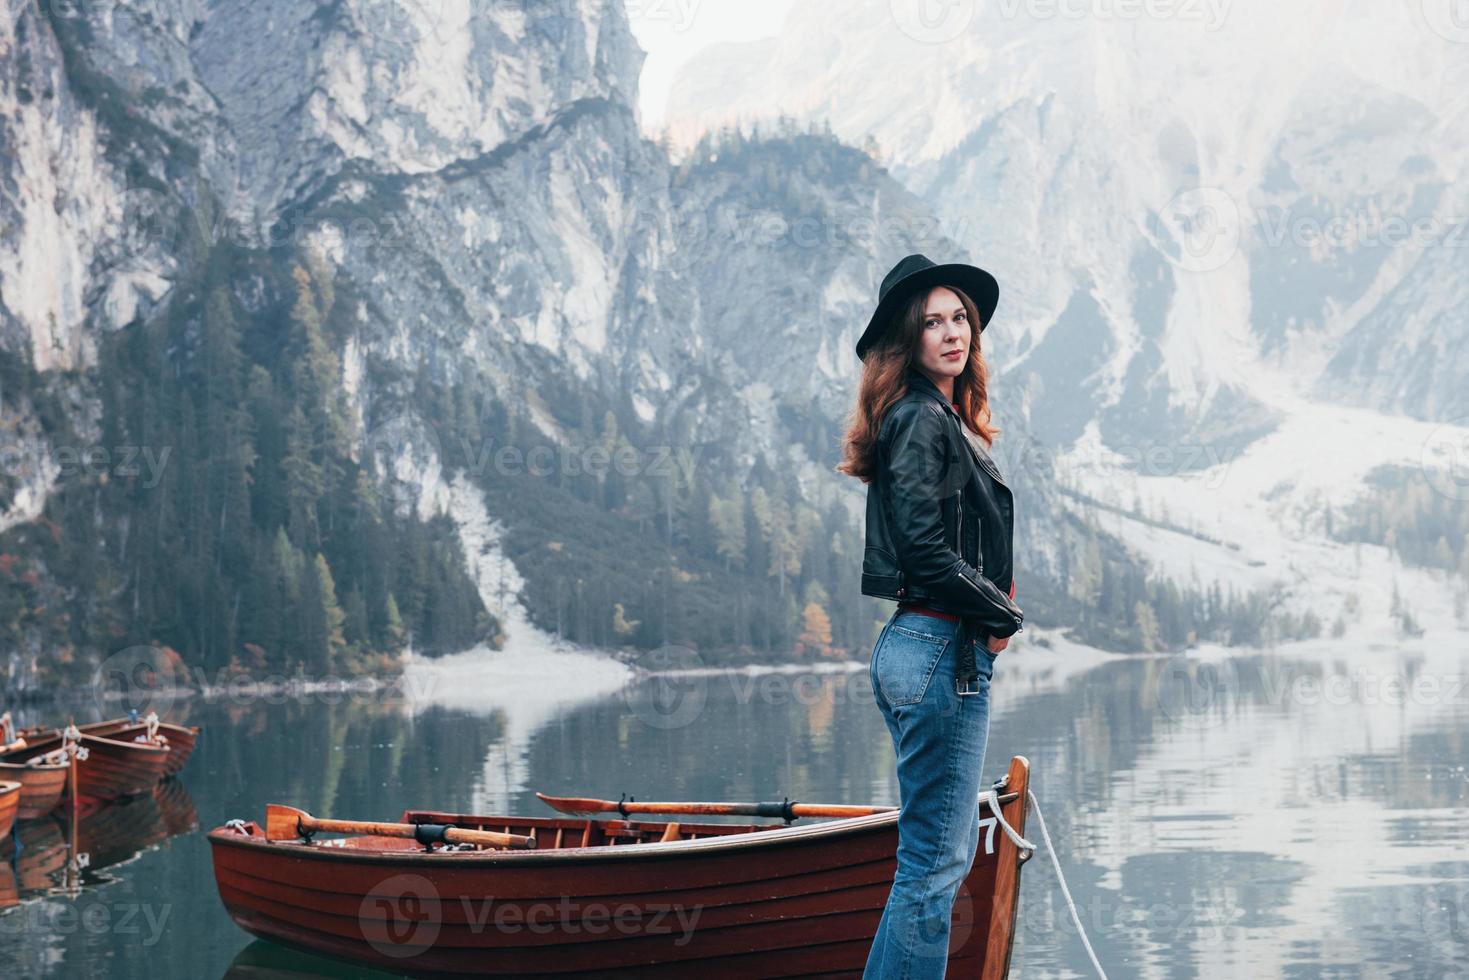 beauté de la nature et fille en une seule image. femme au chapeau noir profitant d'un paysage de montagne majestueux près du lac avec des bateaux photo